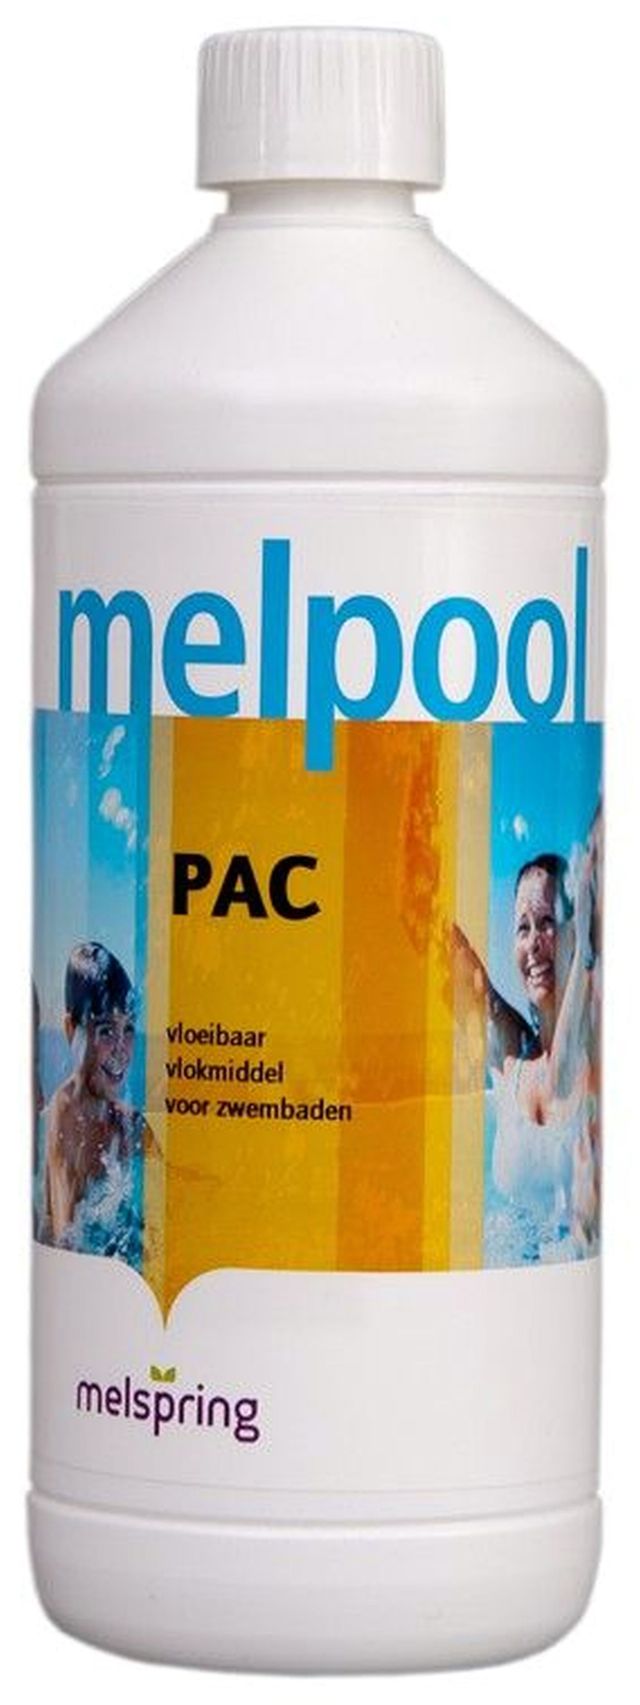 Melpool PAC - vloeibaar vlokmiddel 1 liter